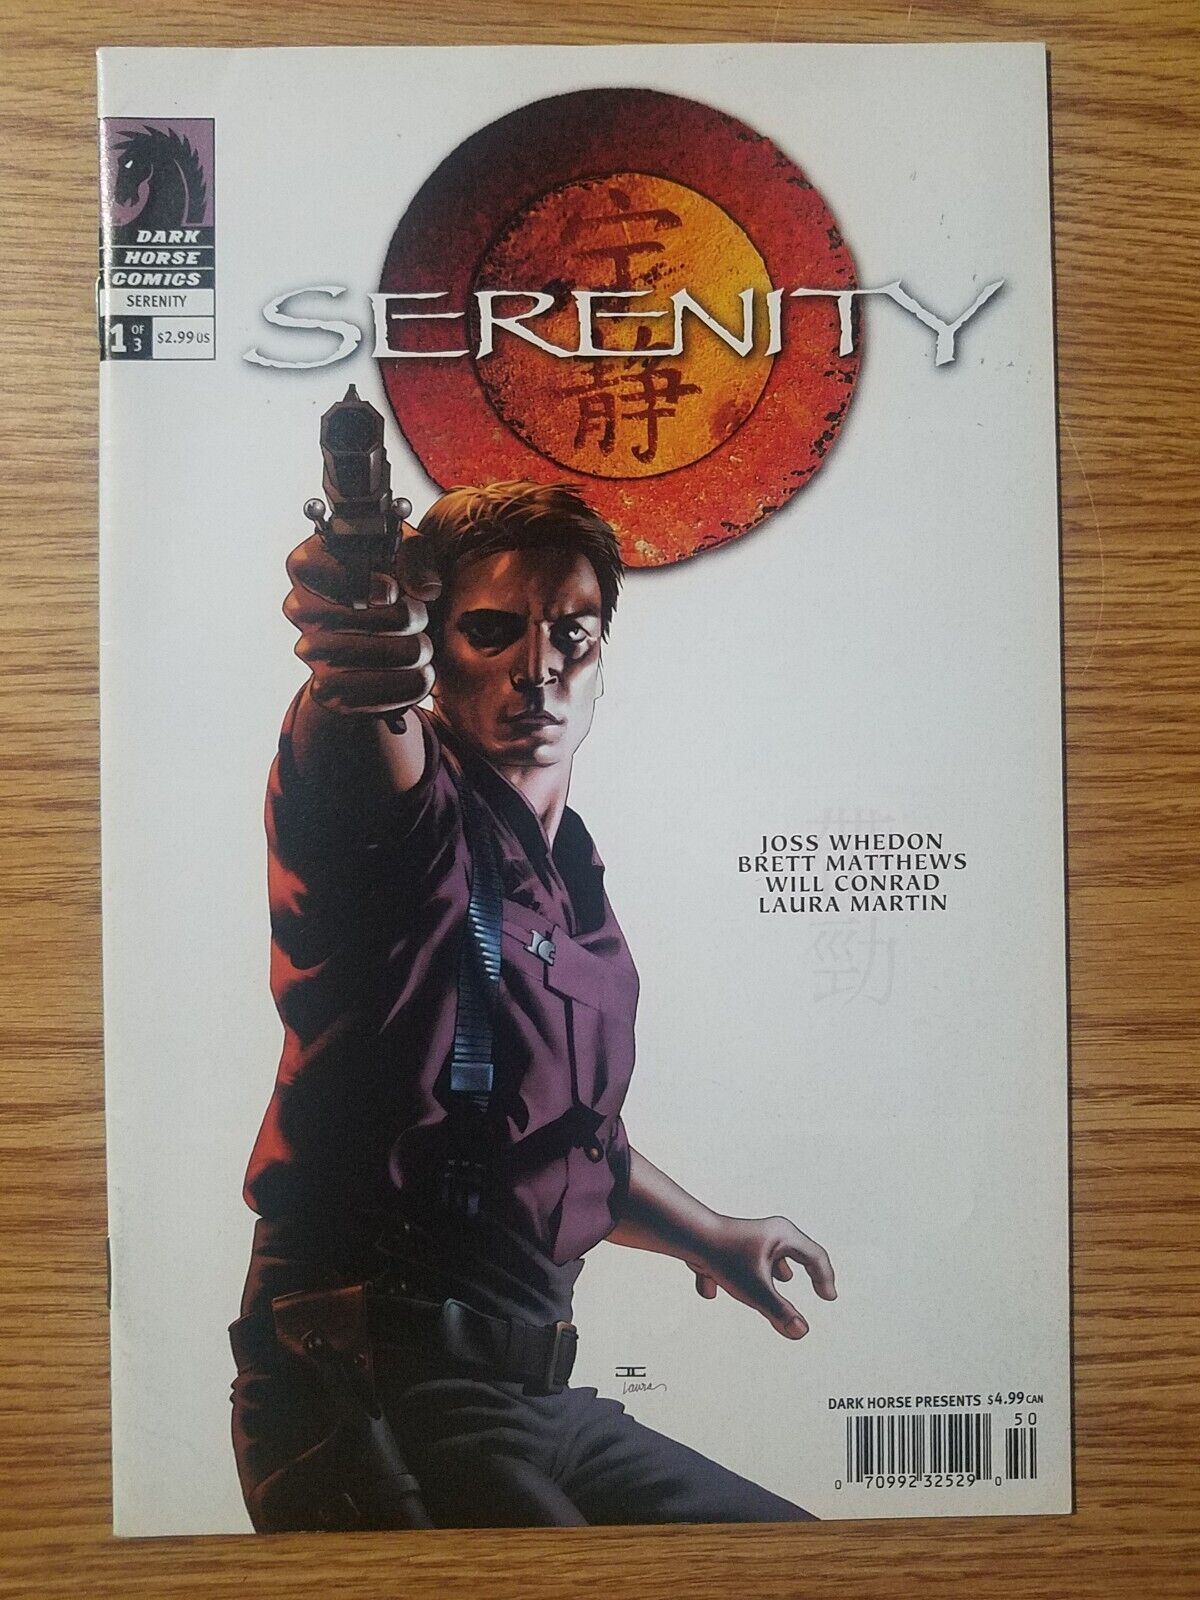 Serenity 1 Vol 1 Dark Horse Comics 2005 